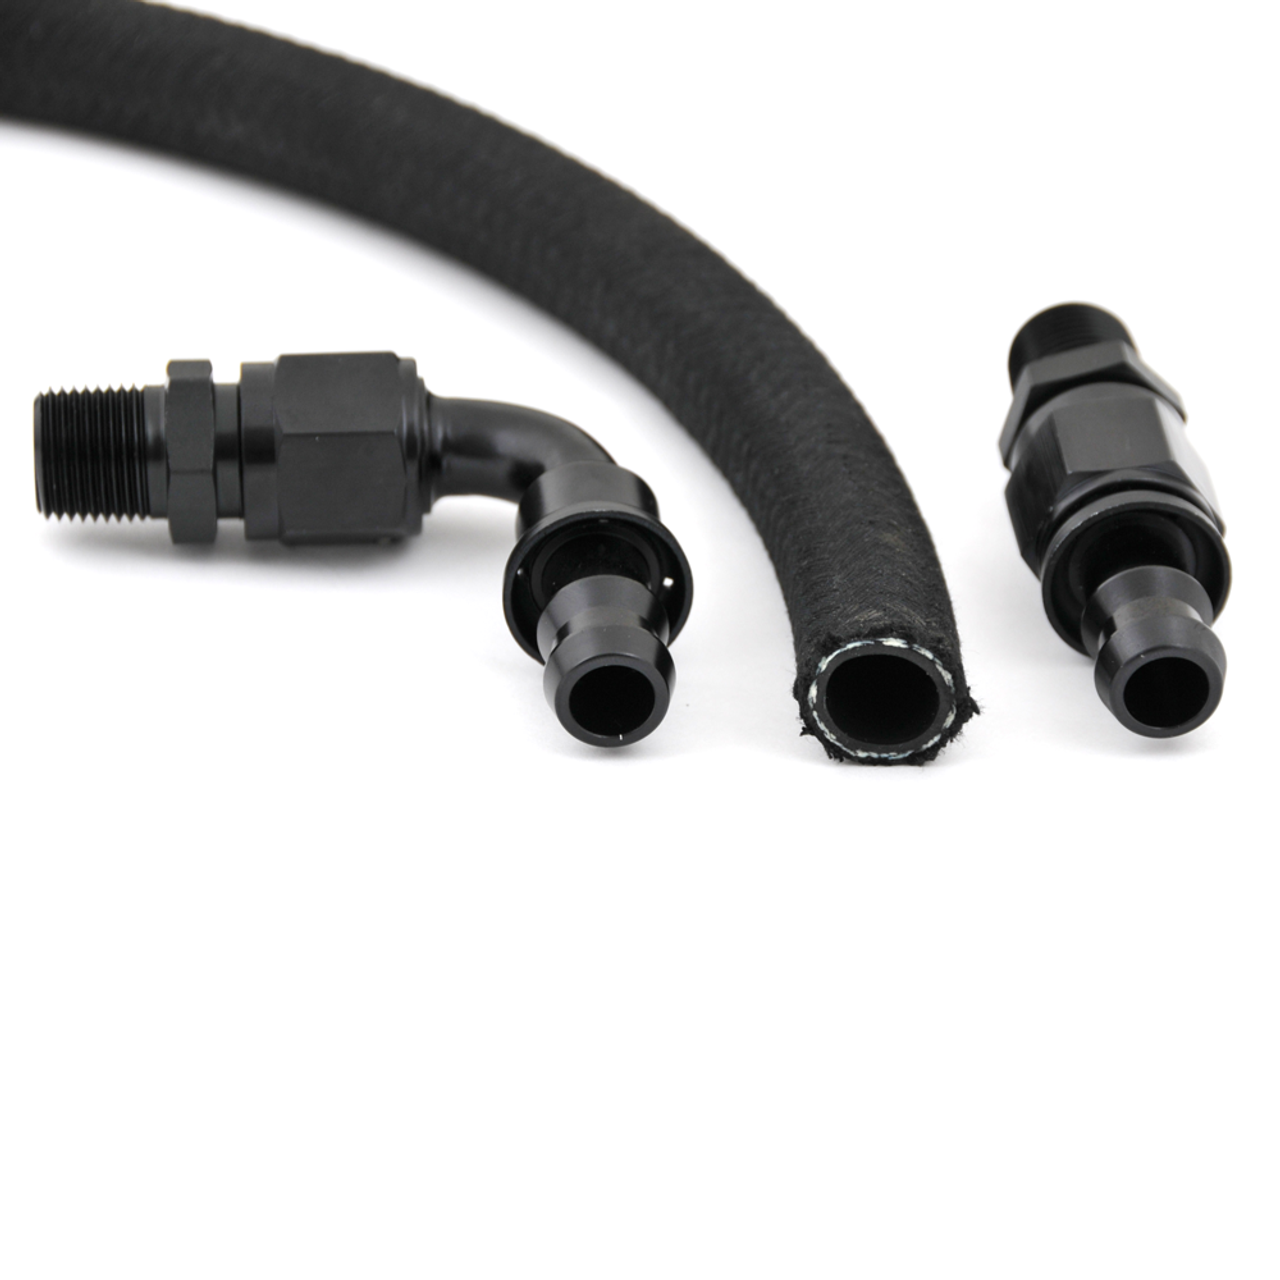 80 Series Filter to Air Manifold hose KIT (YRK-13)